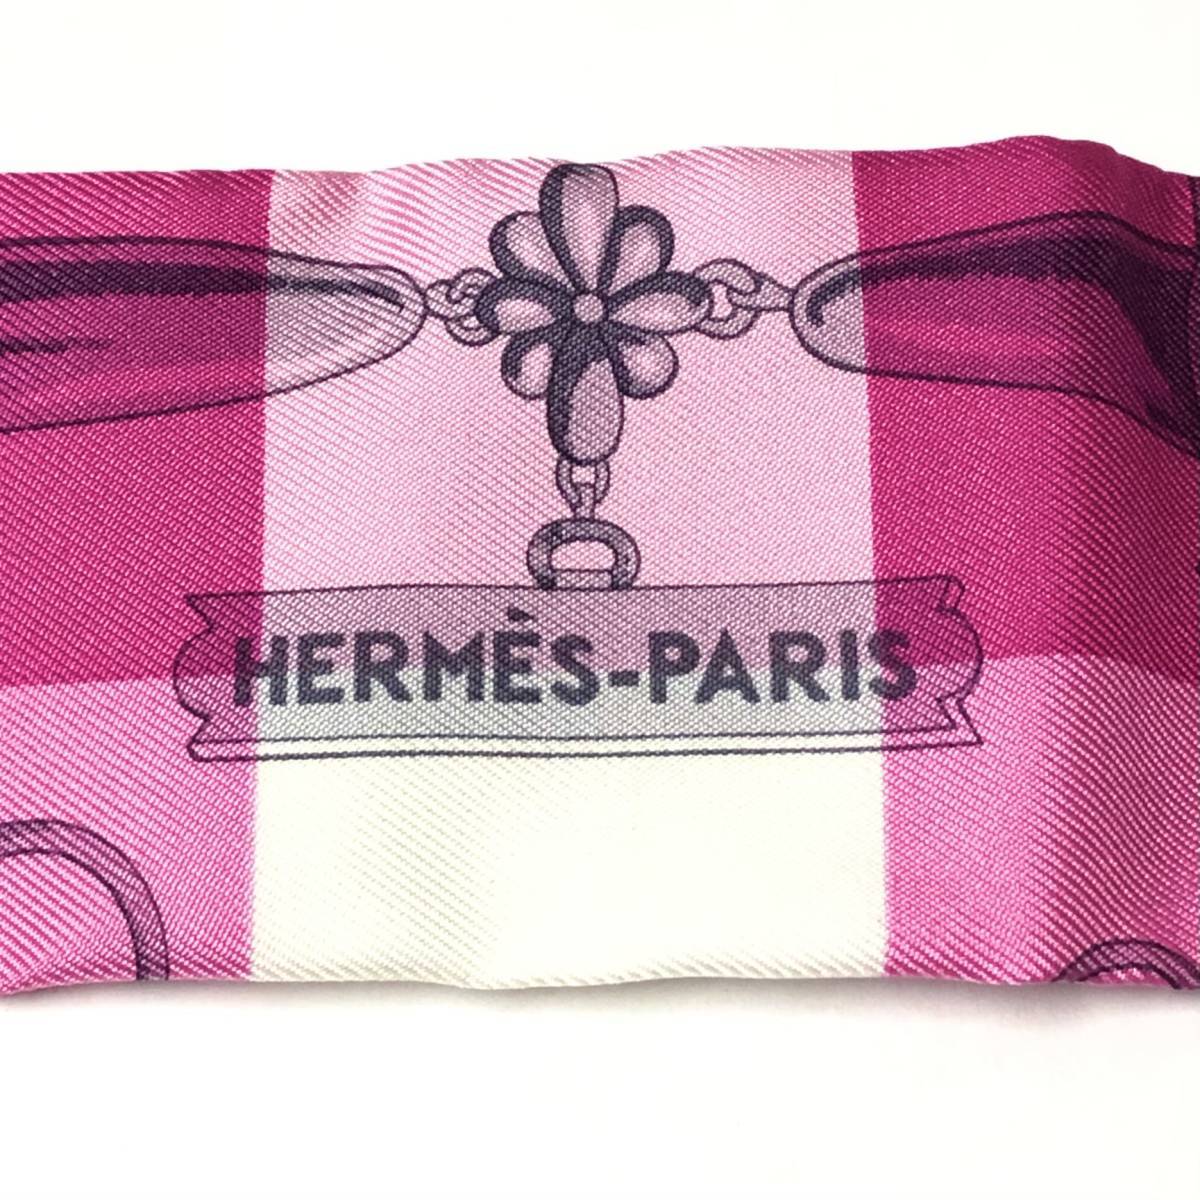 【美品】 Hermes エルメス スカーフ ツイリー ローズ・ヴィフ フランボワーズ ピンク色 鎖 デザイン バッグ装飾 レディース 箱あり_画像3